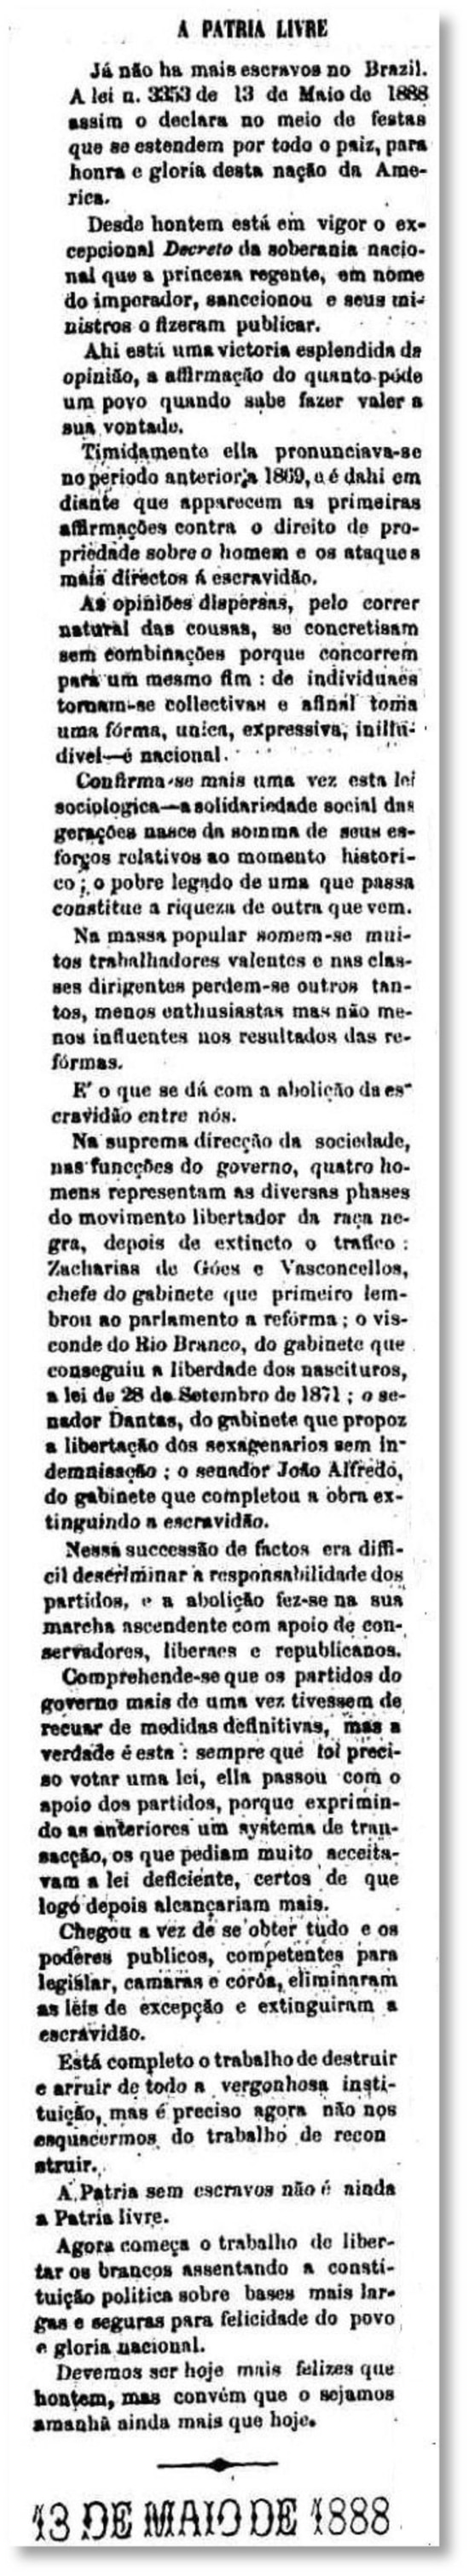 Notícia da abolição da escravidão no jornal de 15/5/1888